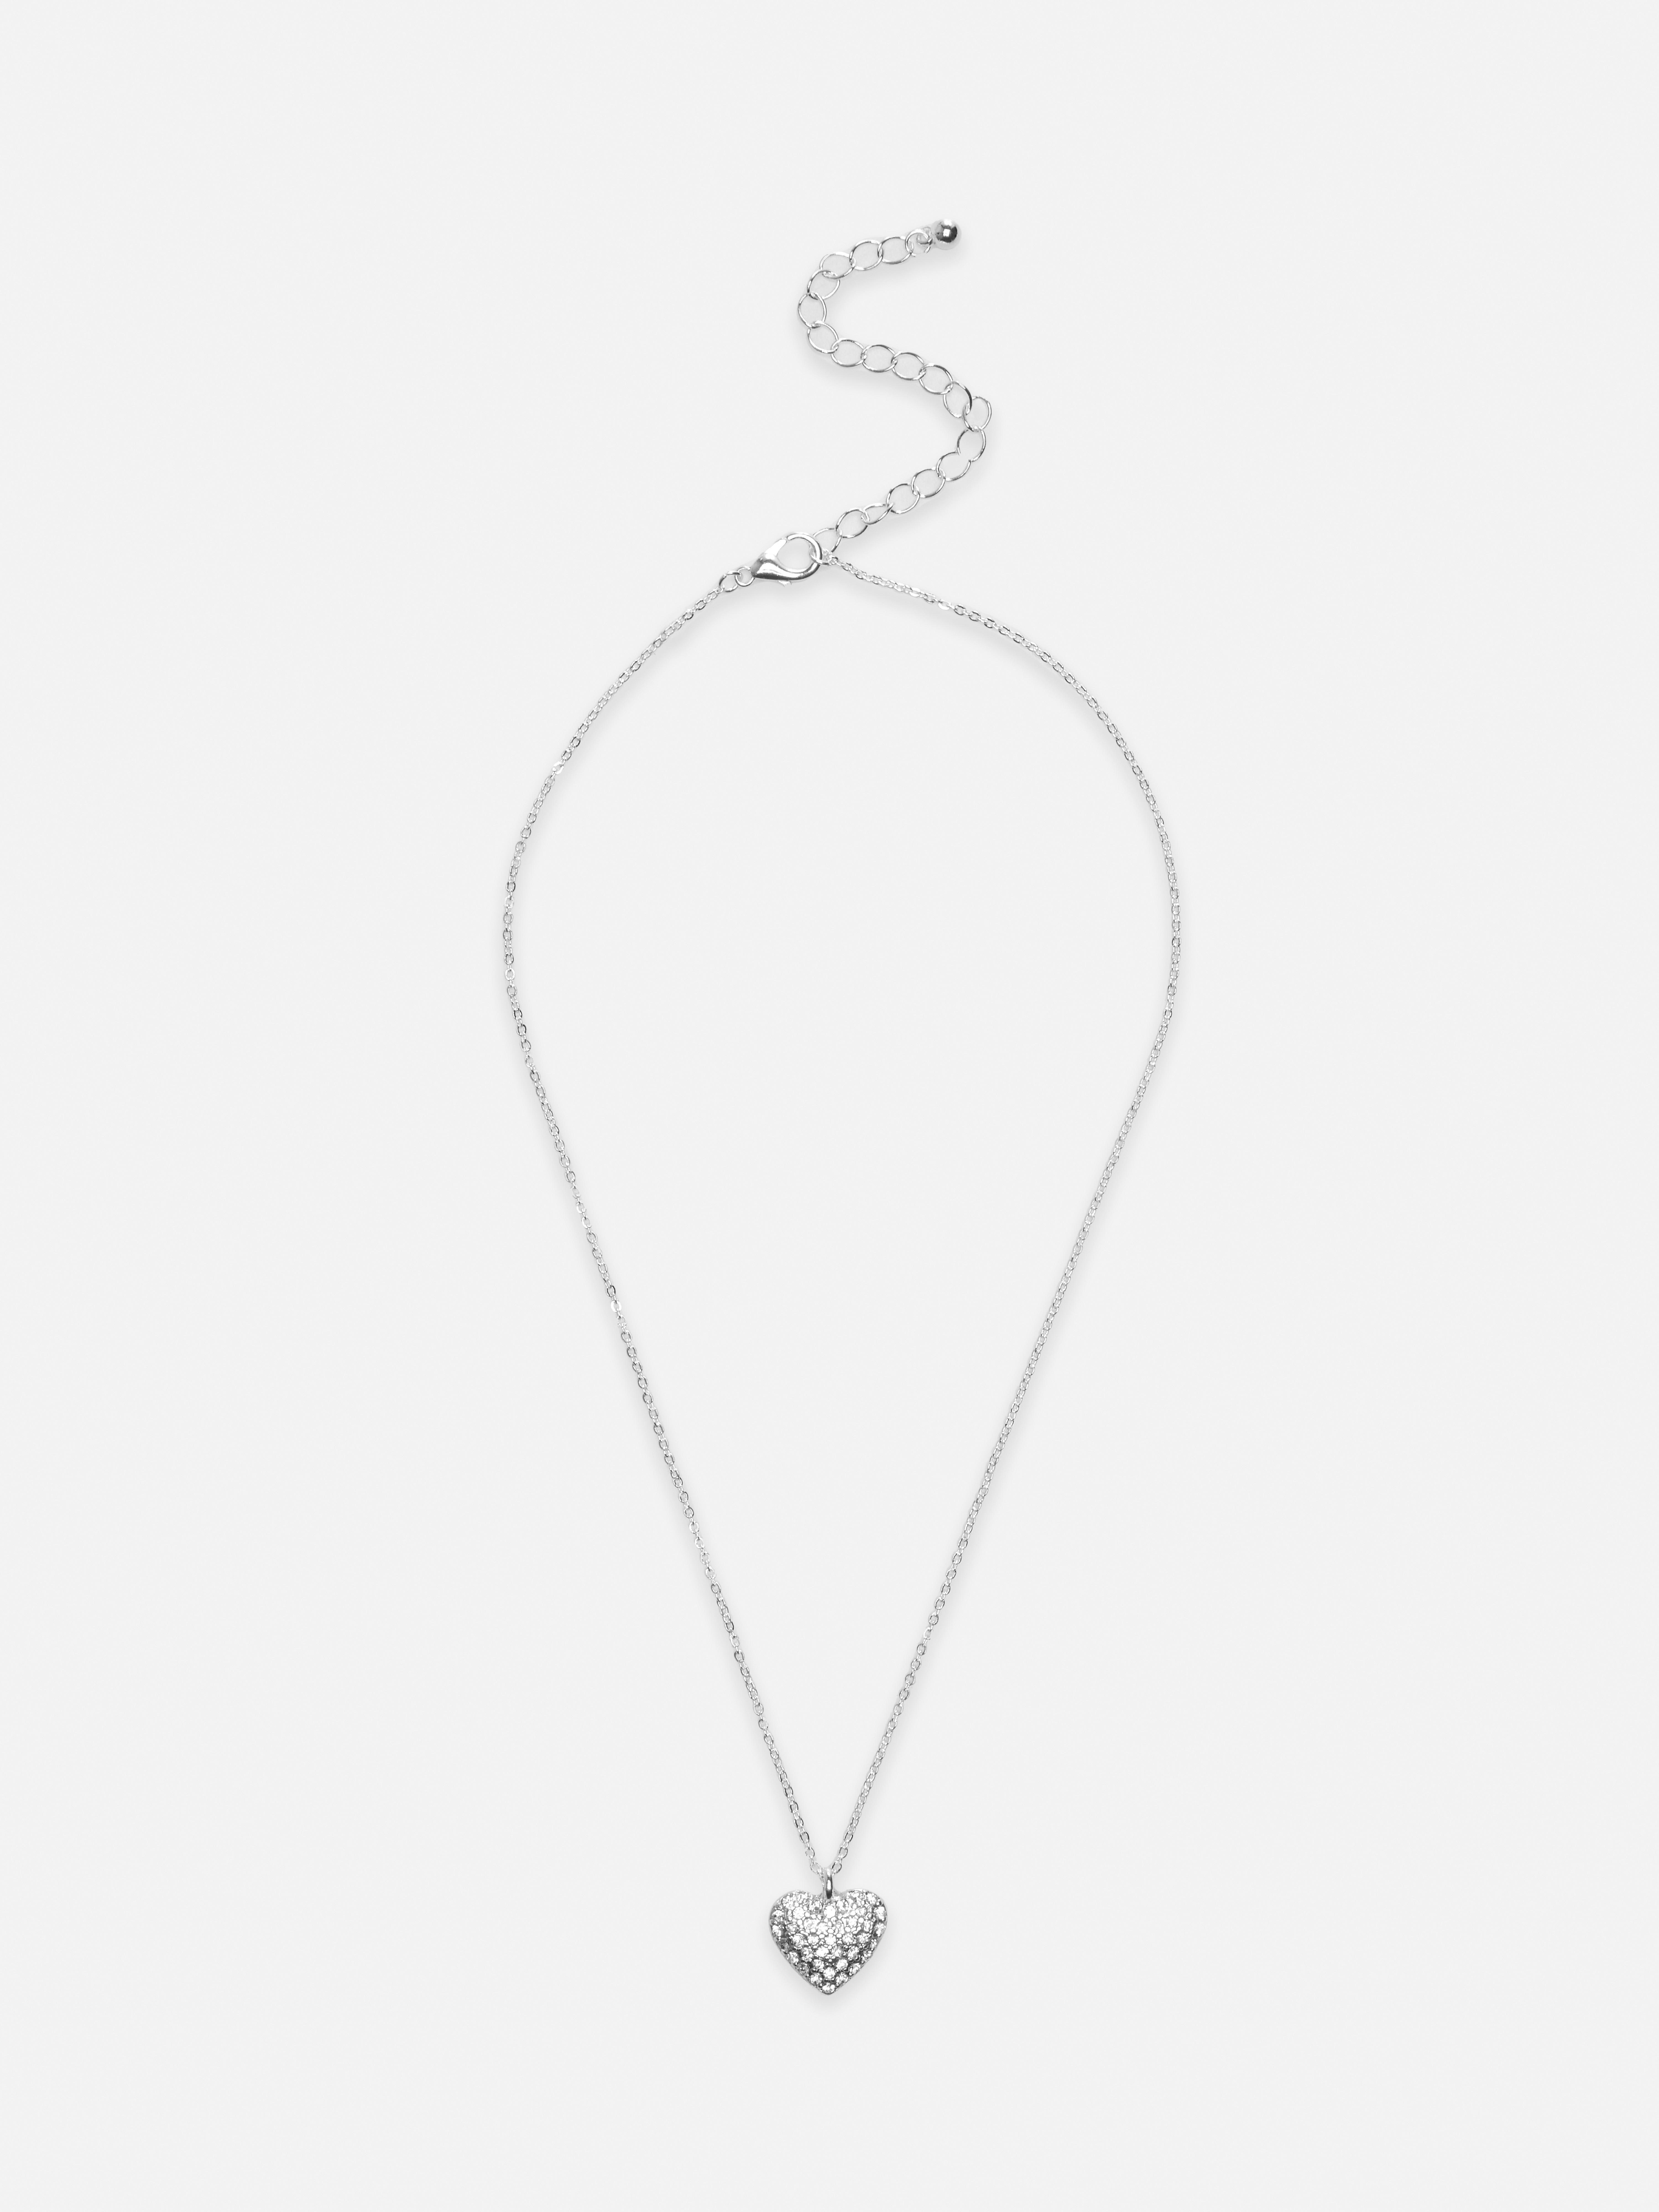 Heart Shaped Diamanté Necklace